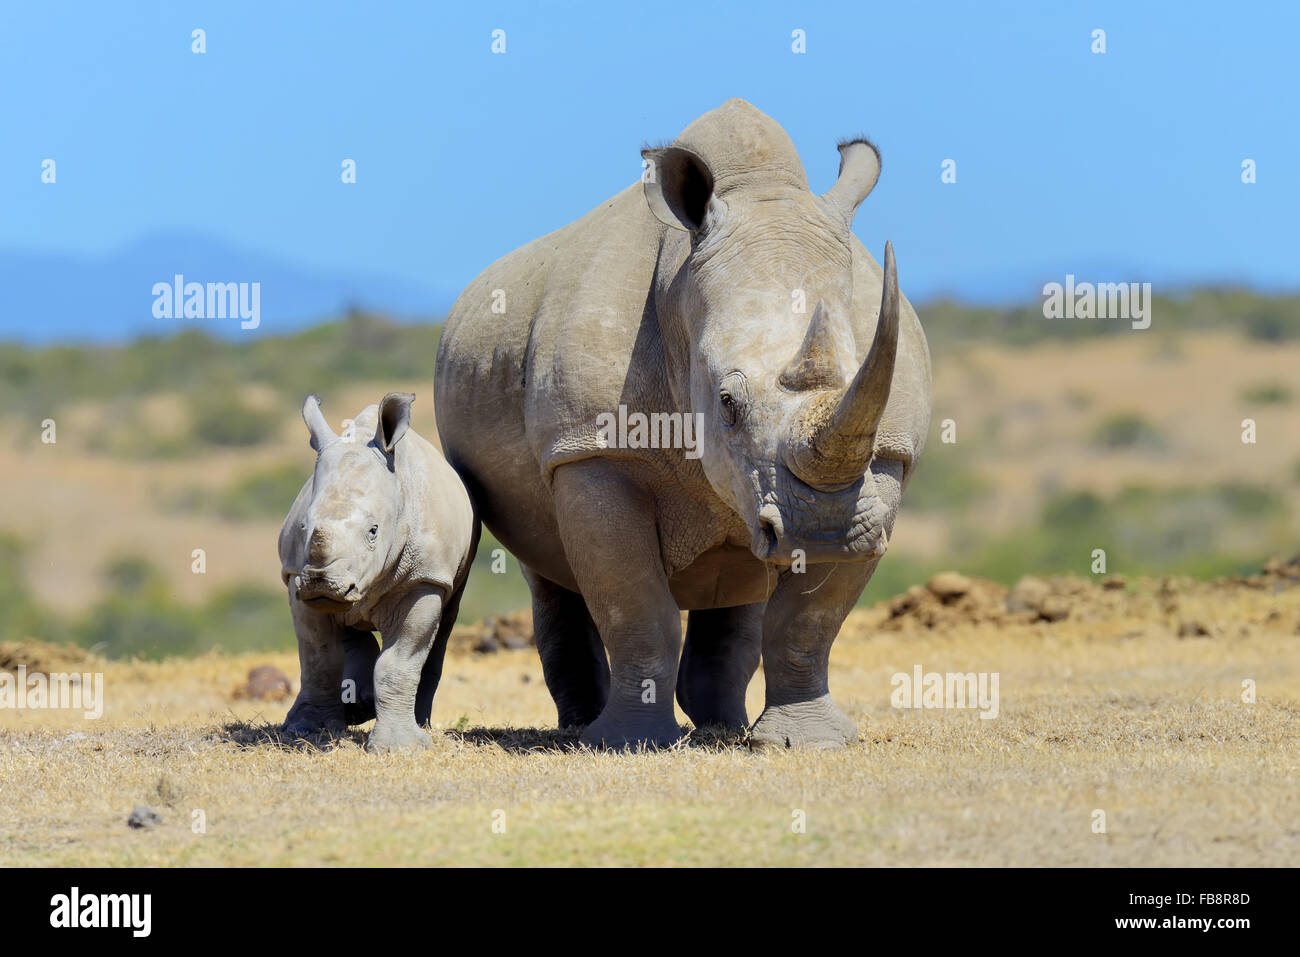 El rinoceronte blanco africano, parque nacional de Kenya, Africa. Foto de stock